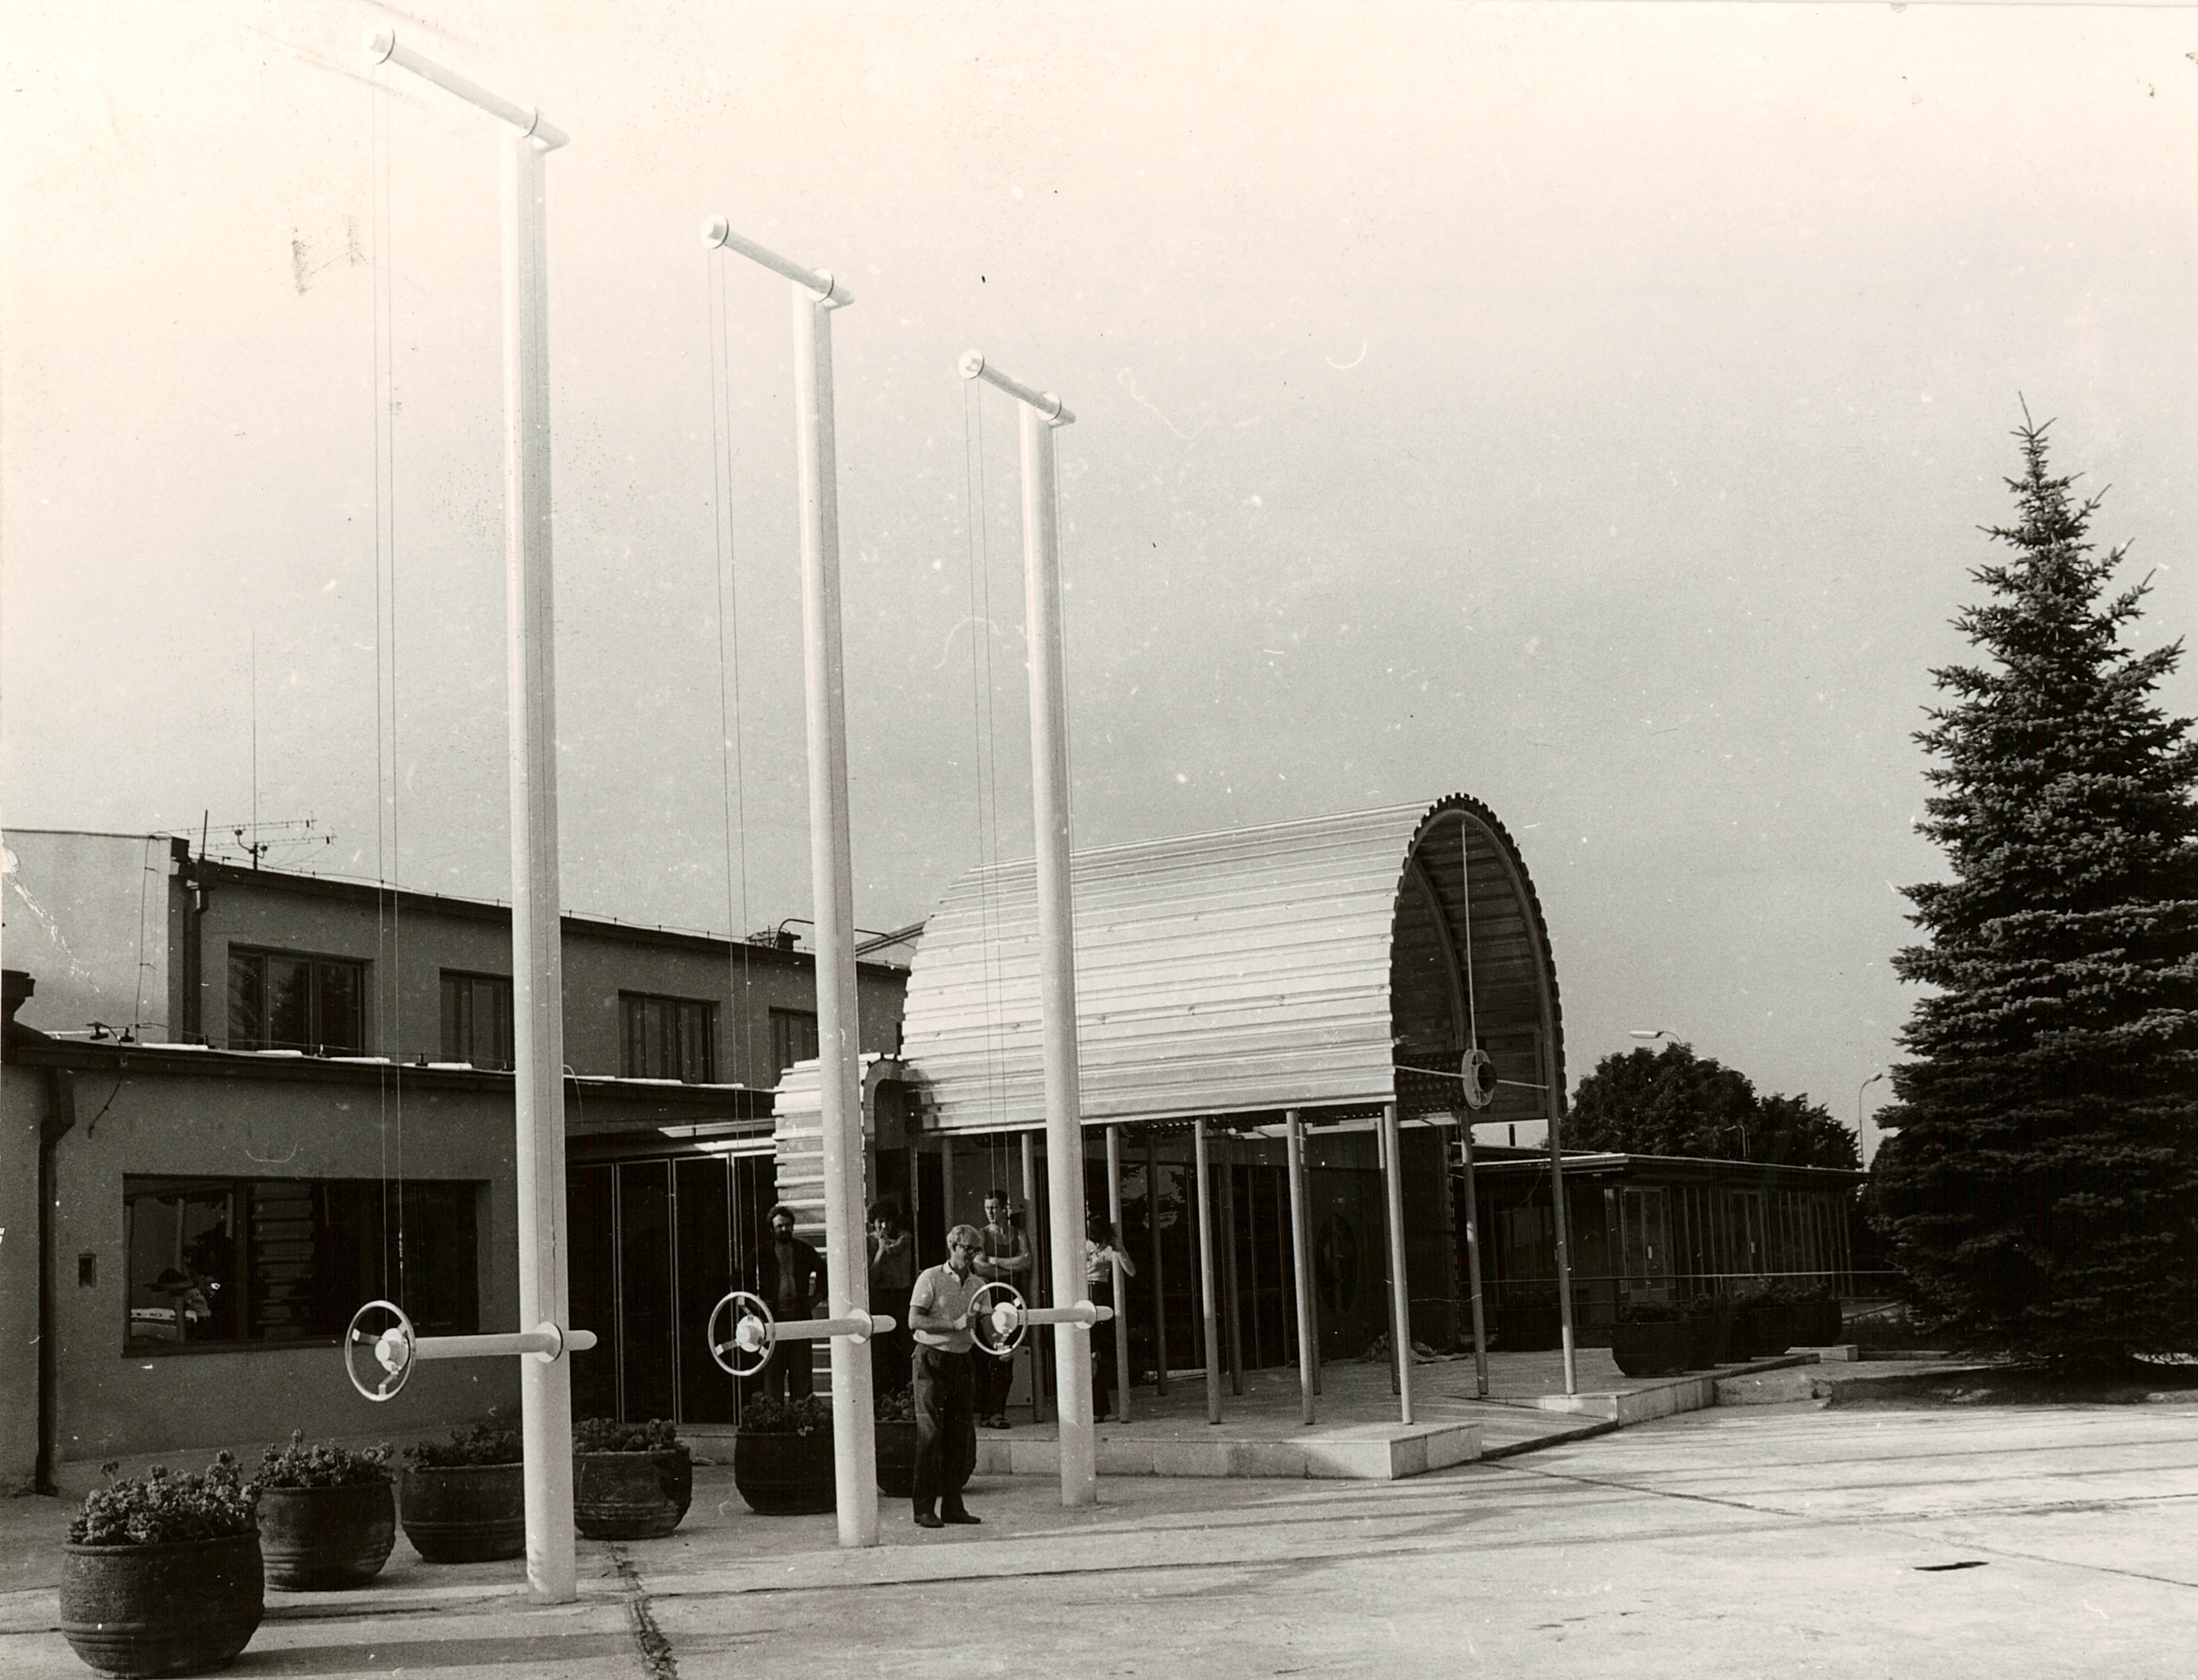 Vládny salónik – pohľad na vstup s pergolou z letiskovej plochy. Foto: H. Fialová, 1973. Majetok Slovenské múzeum dizajnu - SCD.